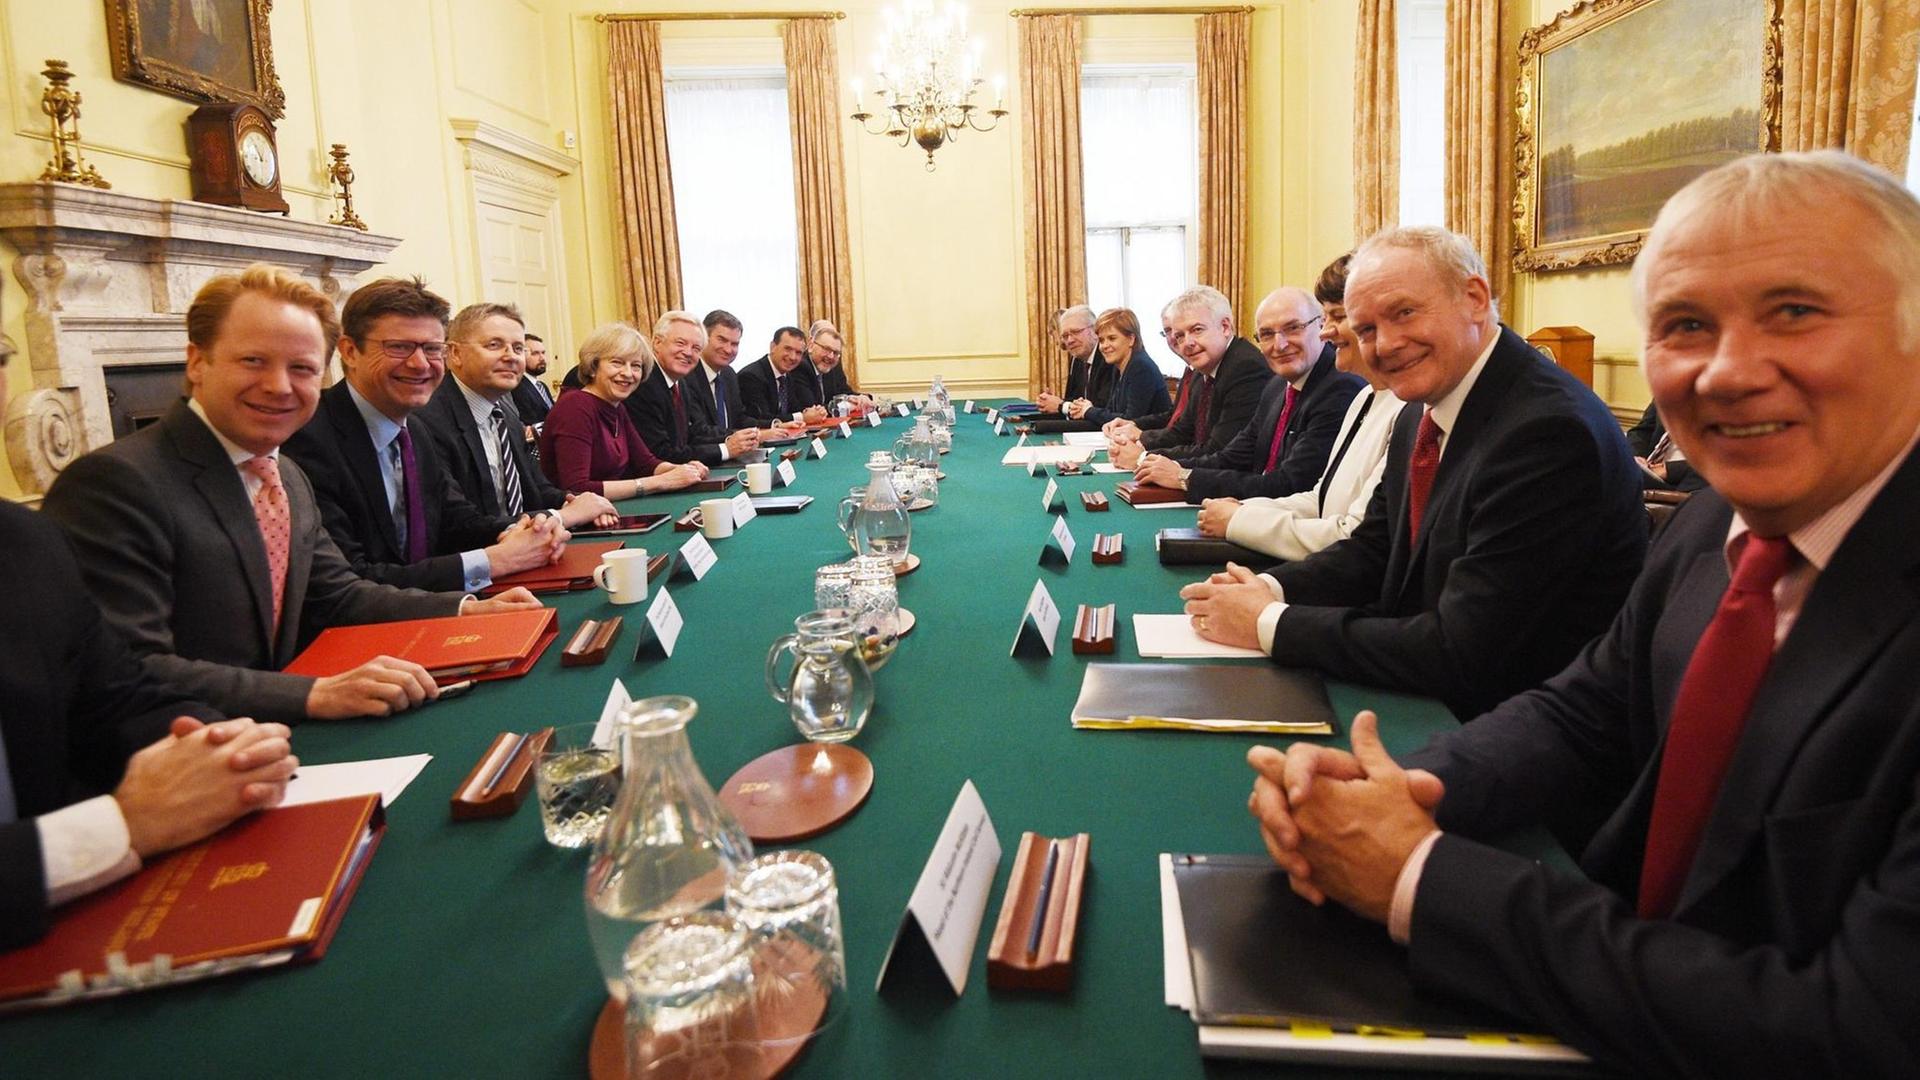 Treffen am britischen Regierungssitz in der Downing Street mit den drei Frauen Theresa May, Nicola Sturgeon und Arlene Foster - letztere für Nordirland, sowie dem ersten Minister aus Wales, Carwyn Jones.